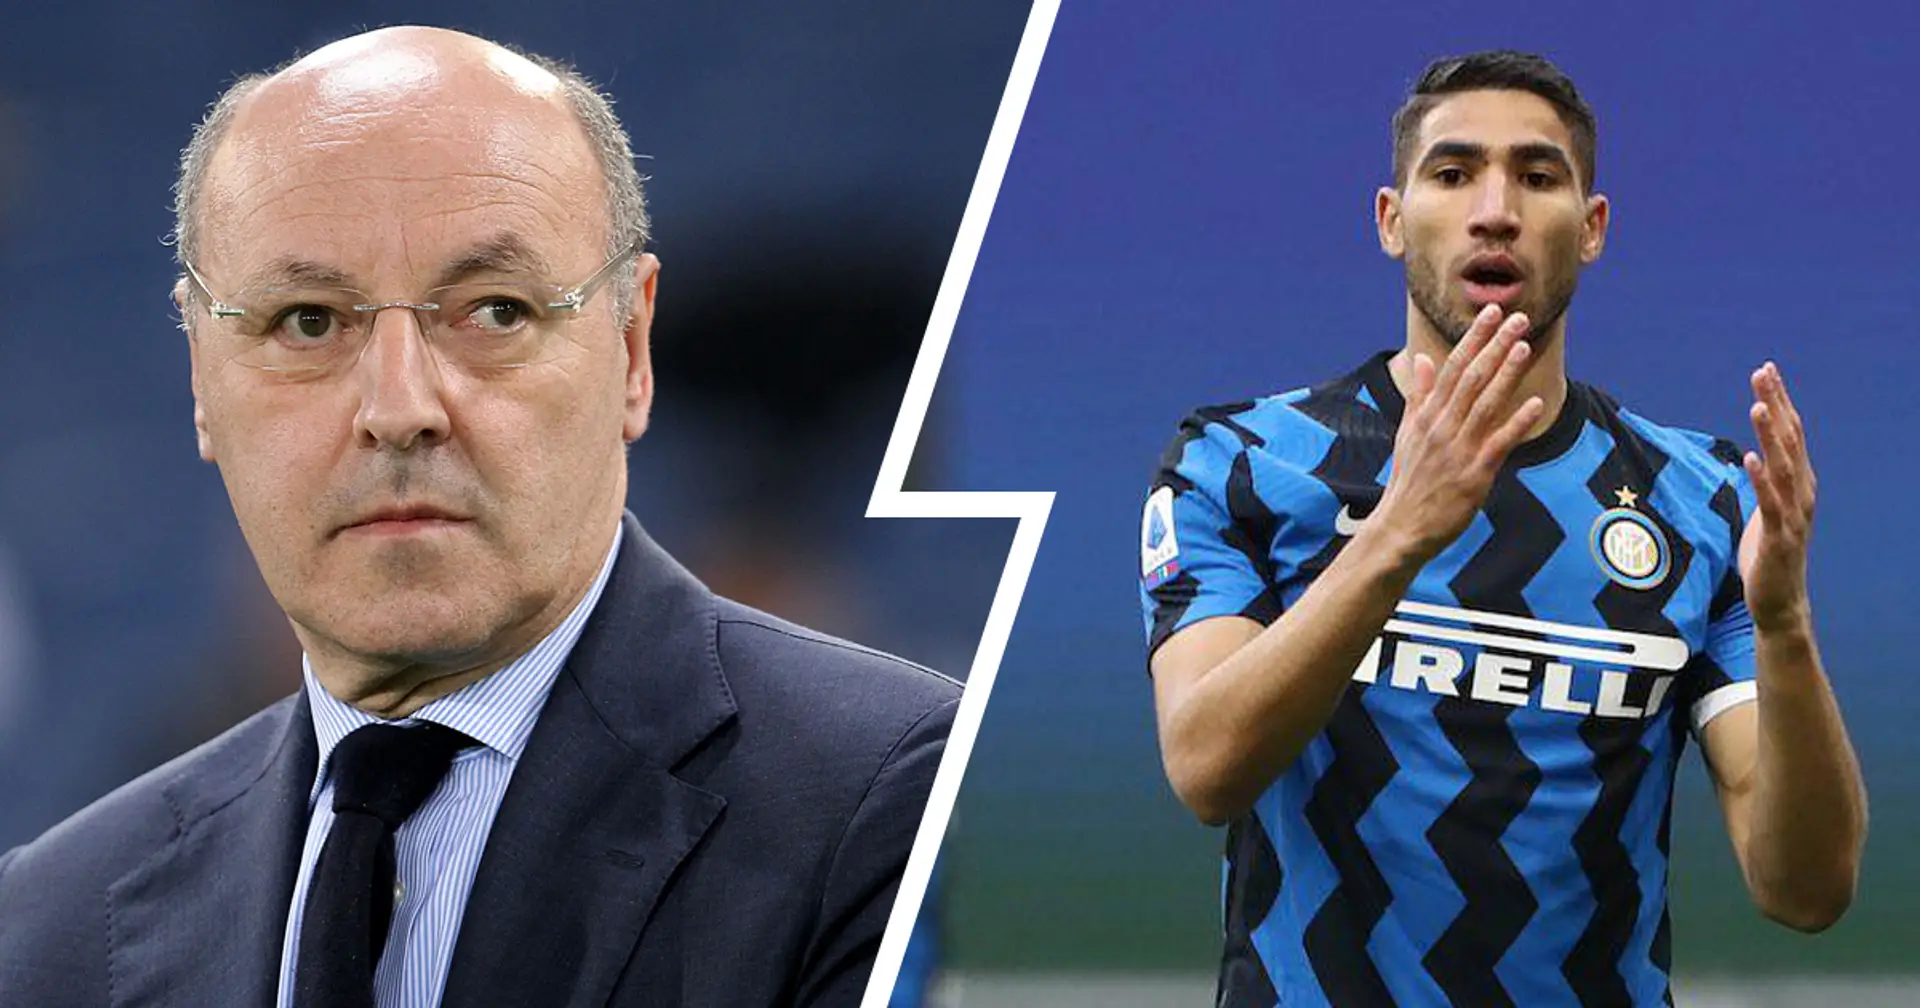 La cessione di Hakimi al PSG avrà un effetto sgradito all'Inter: Marotta deve rivedere i piani sul mercato